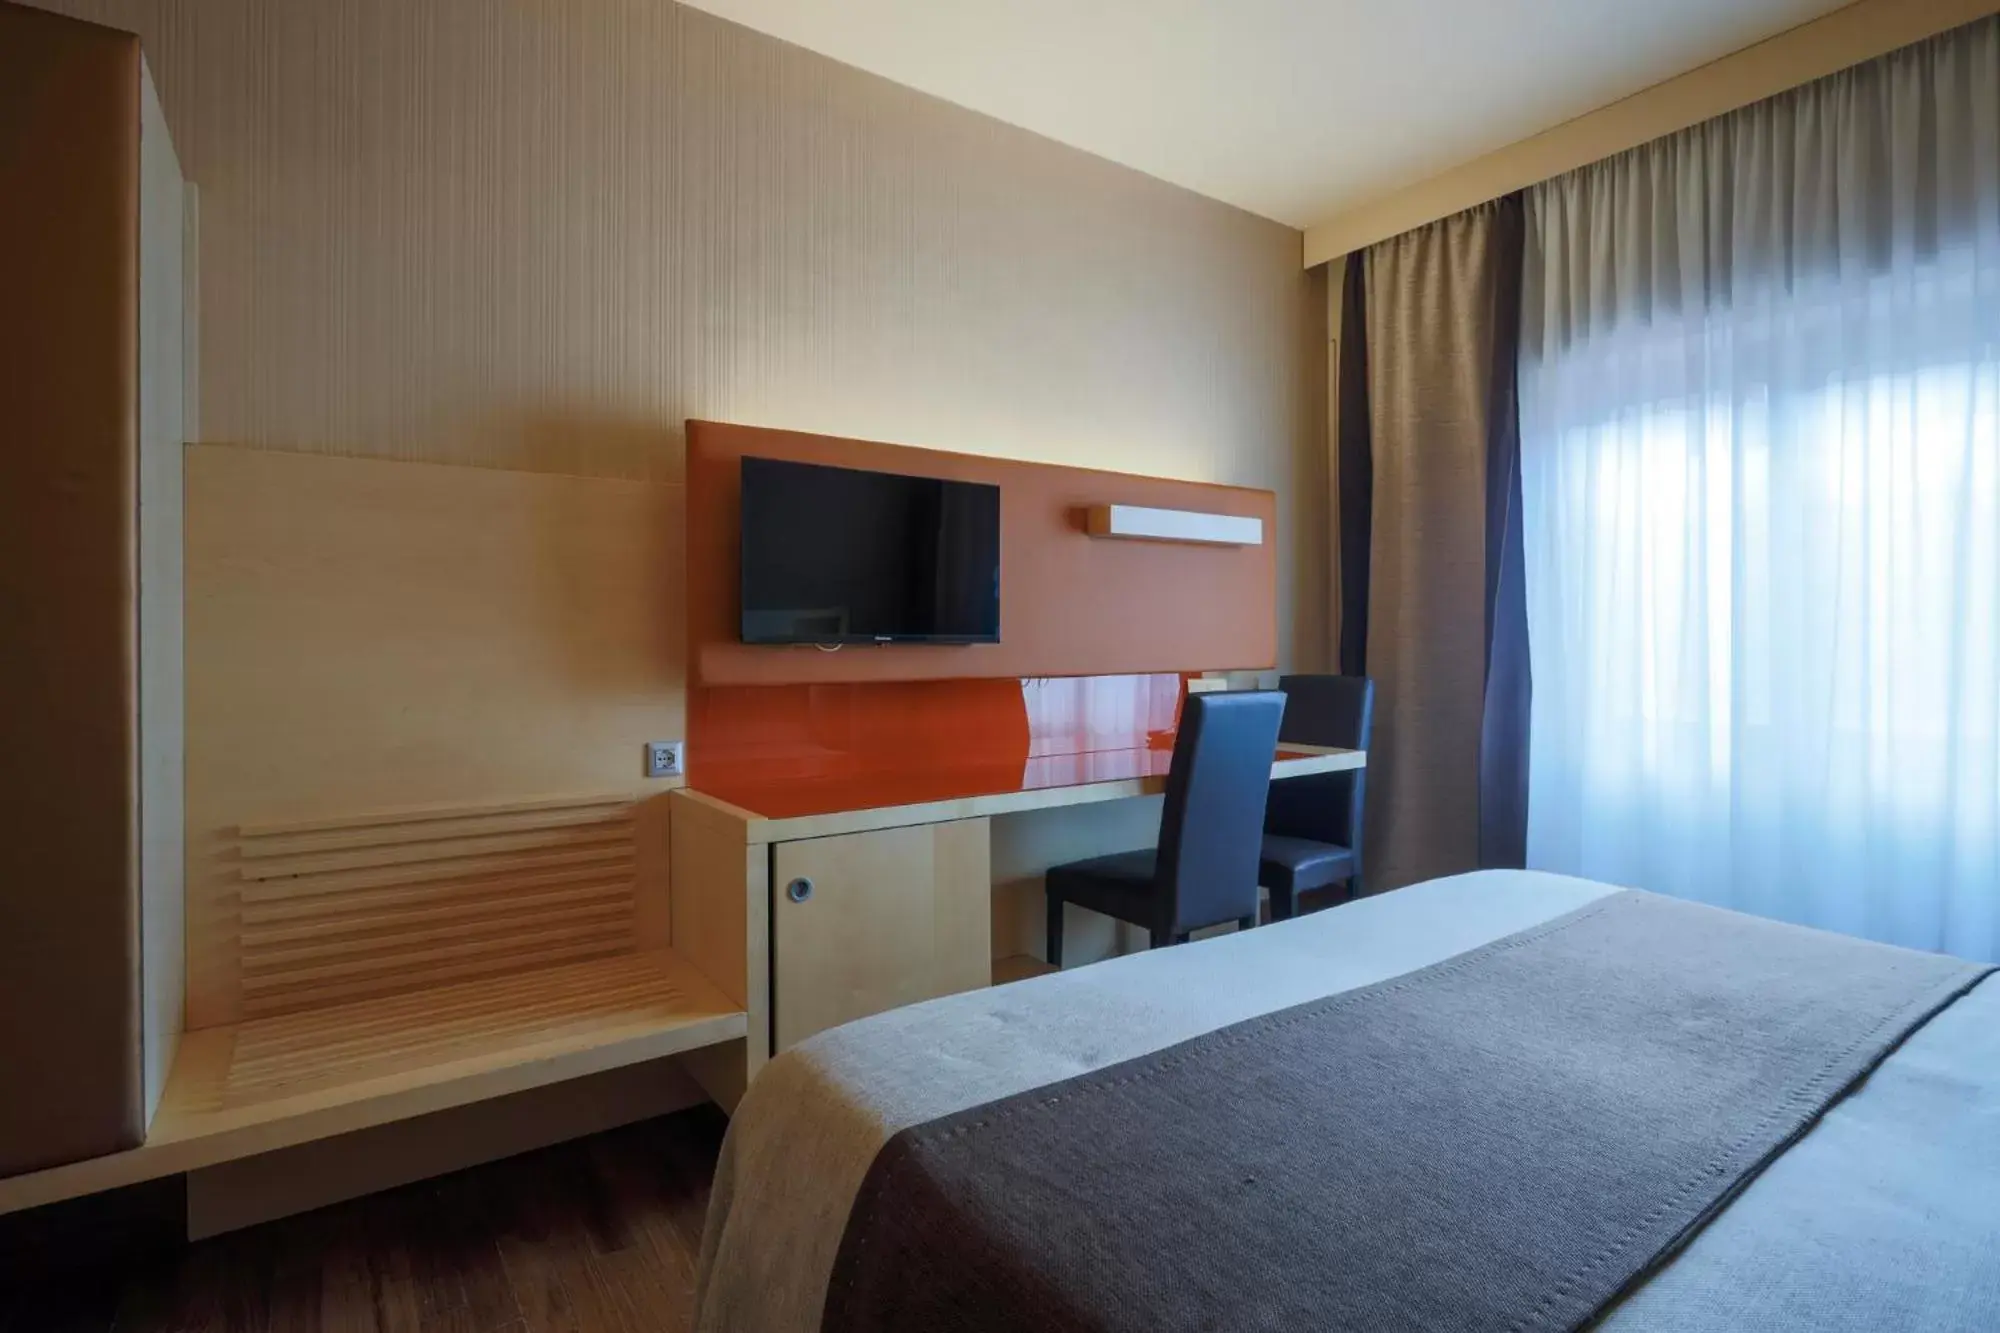 Bed in Hotel Velino